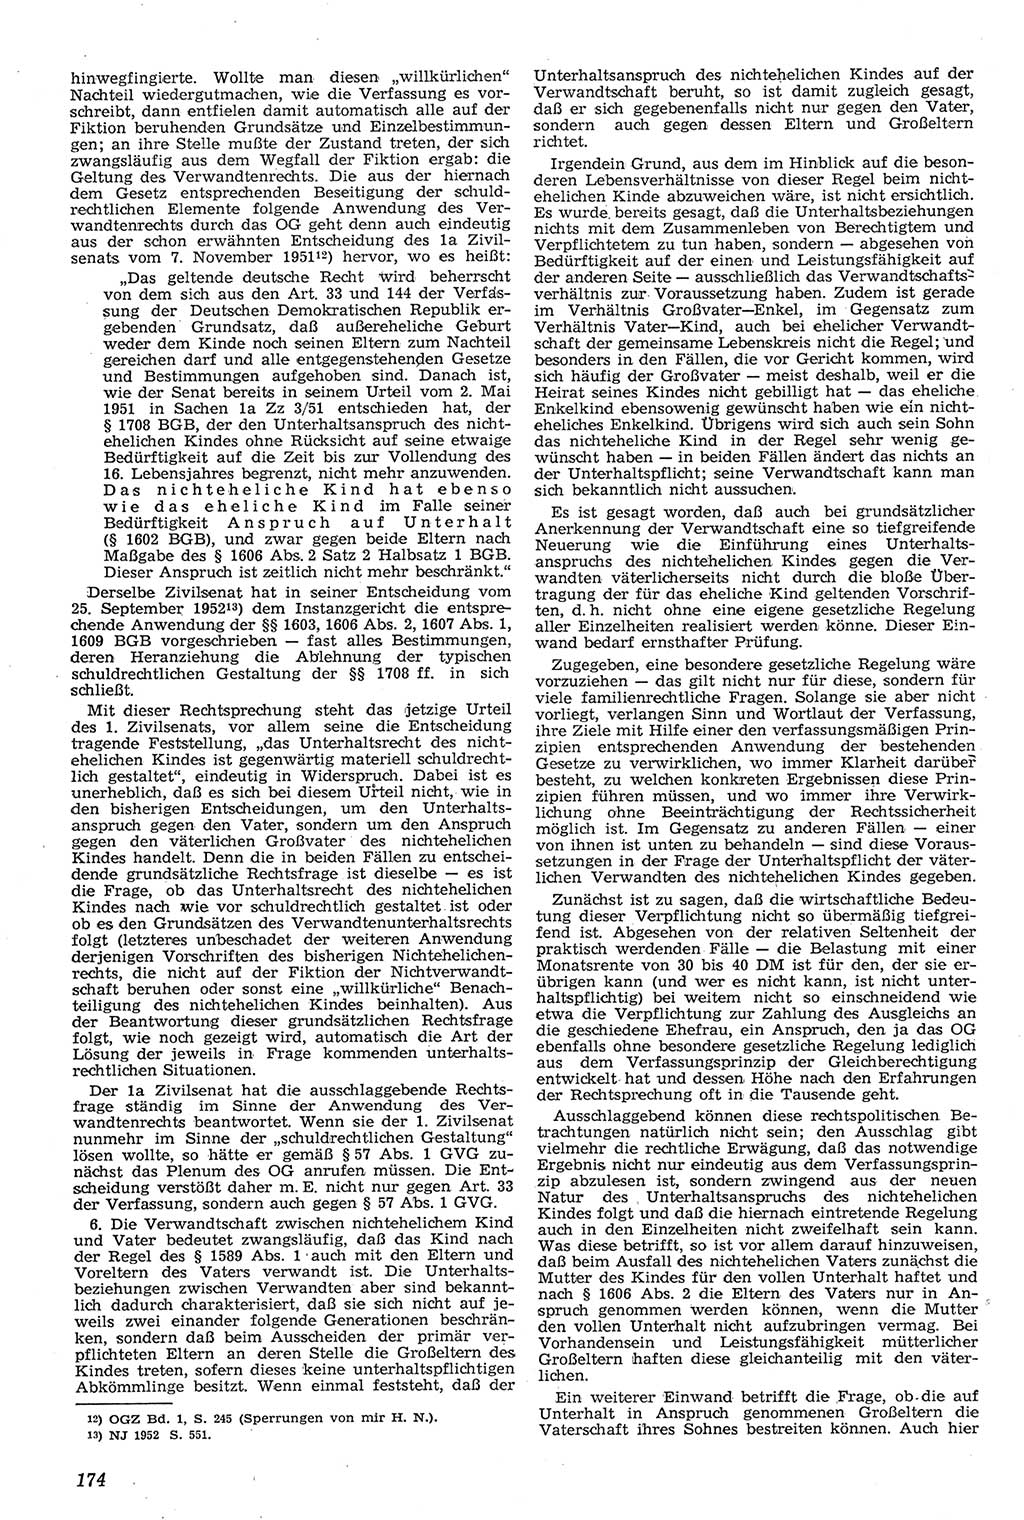 Neue Justiz (NJ), Zeitschrift für Recht und Rechtswissenschaft [Deutsche Demokratische Republik (DDR)], 11. Jahrgang 1957, Seite 174 (NJ DDR 1957, S. 174)